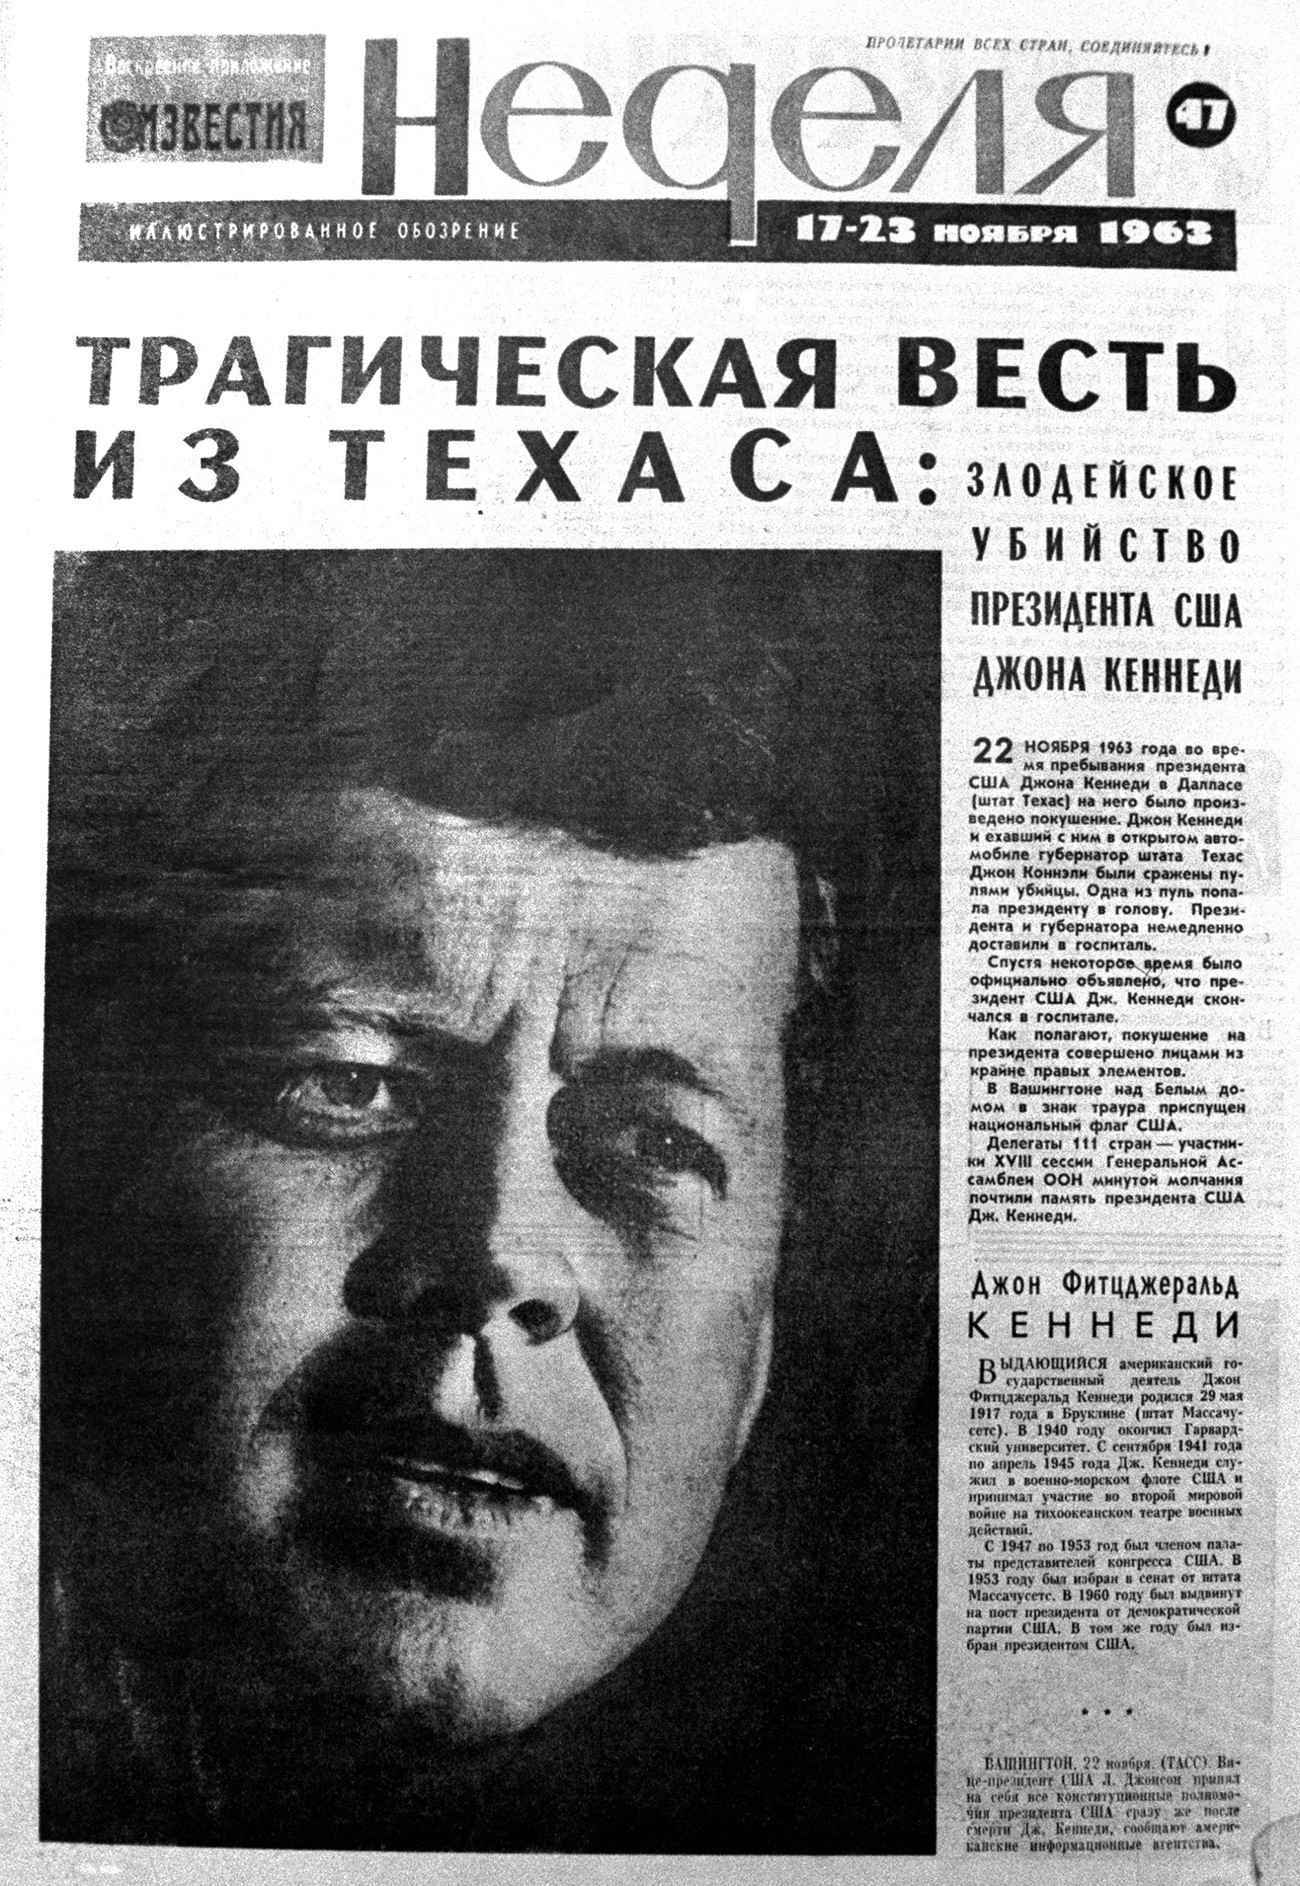 Titelseite der sowjetischen Zeitung 